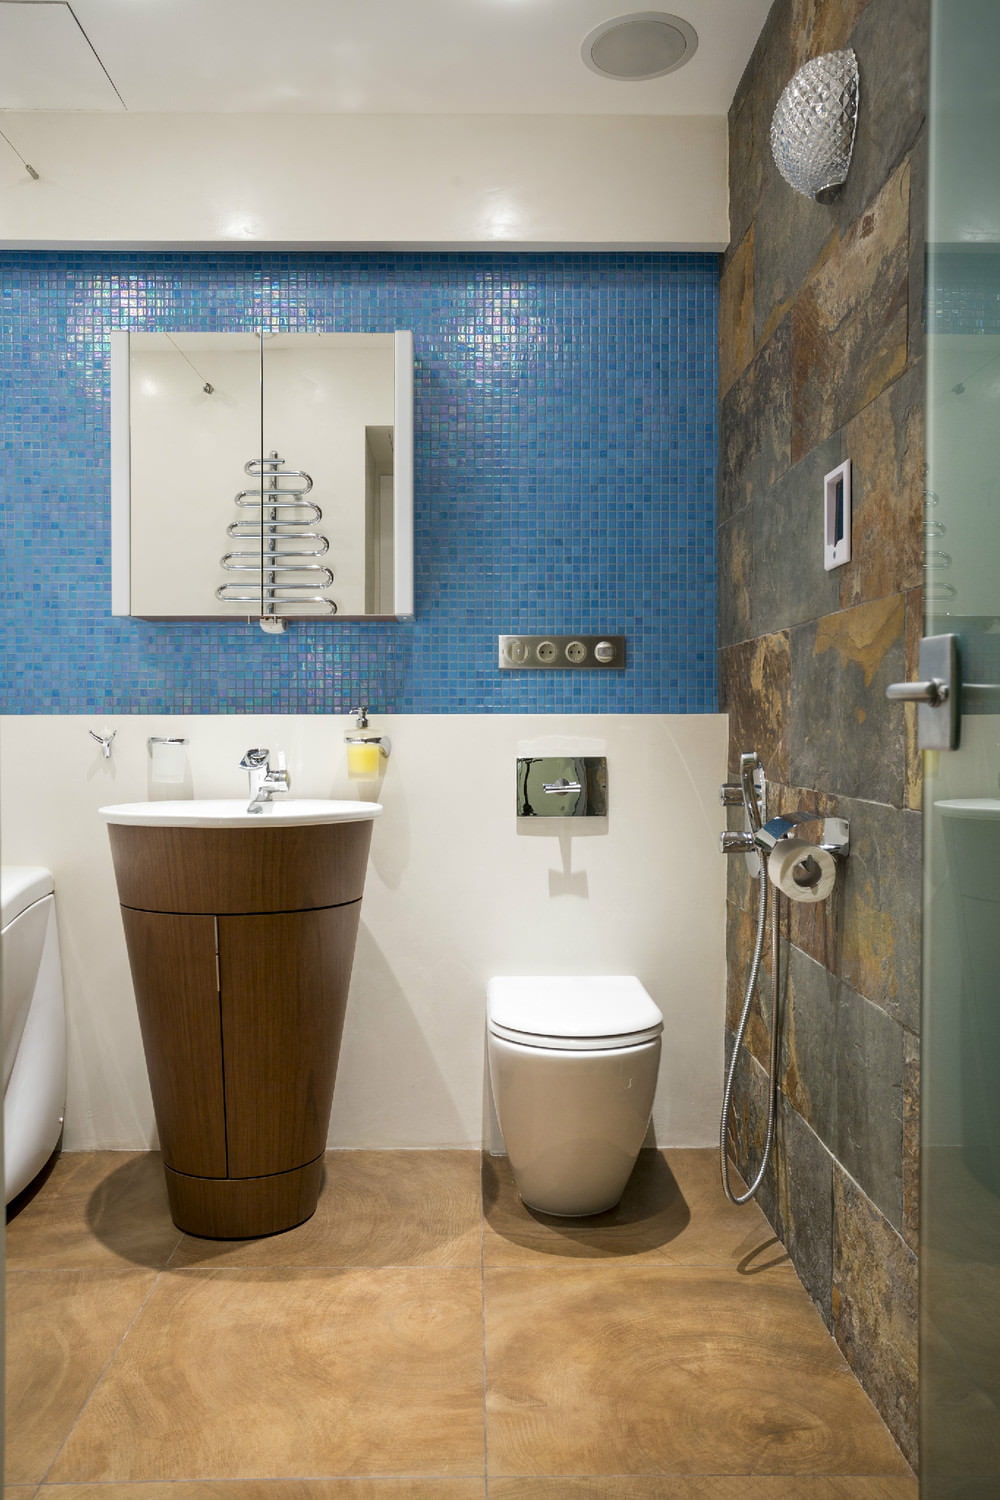 Salle de bain dans la conception d'un appartement de deux pièces de 43 m². m.